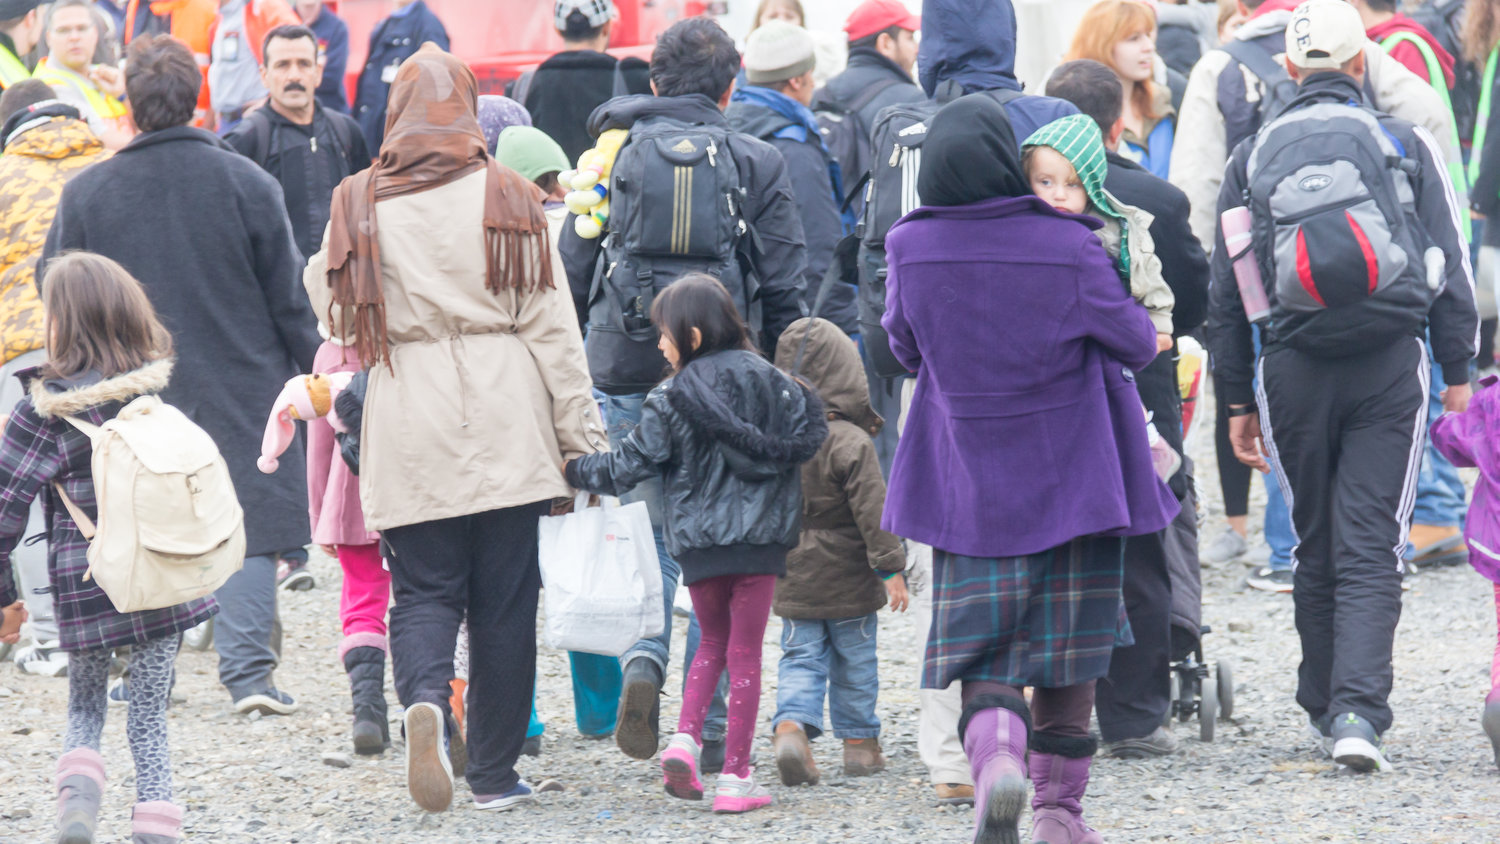 rifugiati che camminano in gruppo